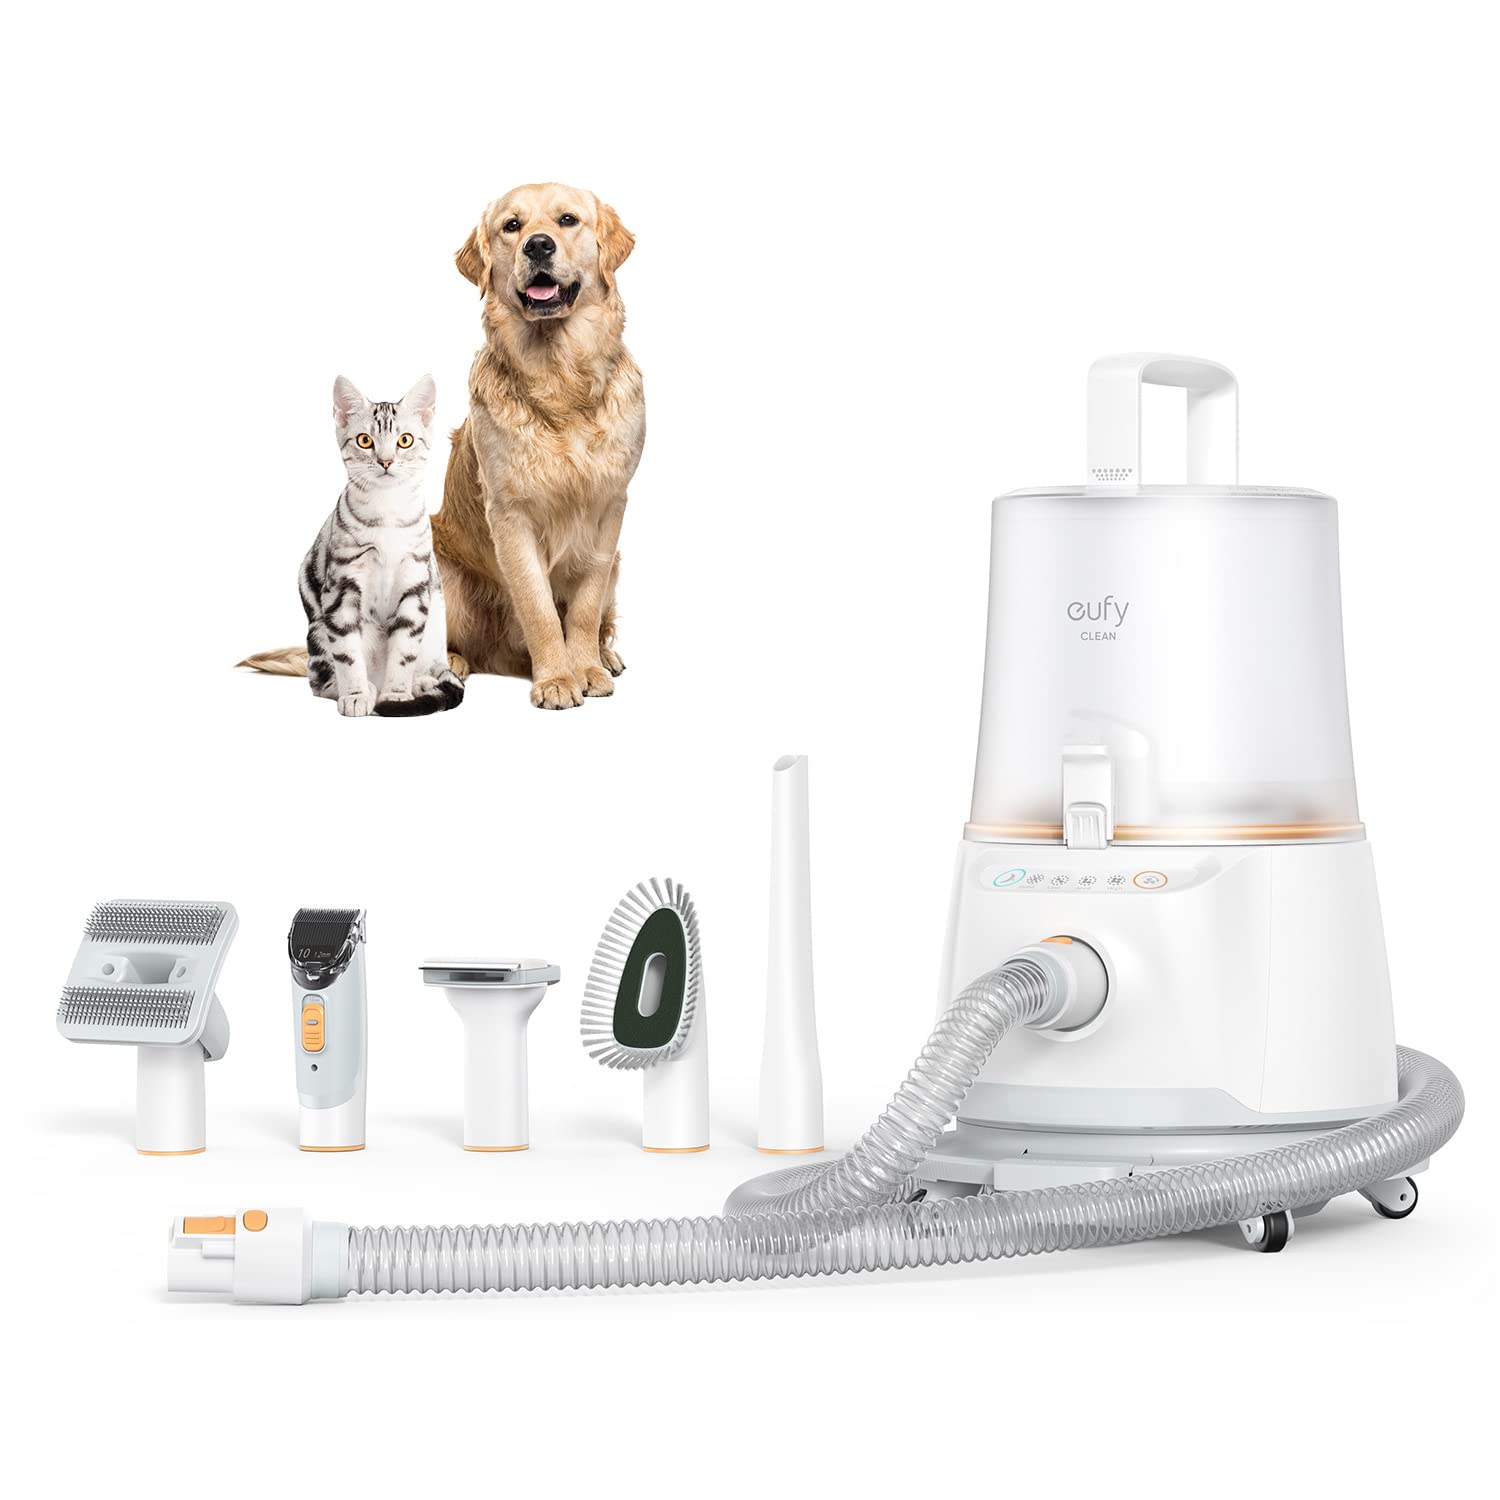 eufy von Anker N930 Fellpflegeset für Haustiere, 5-in-1 Set für Hunde; mit Staubsauger, 4,5L Auffangbehälter, starke Saugkraft, leise, Tierfell Pflege, Entfilzen, Schermaschine, Reinigungsbürste